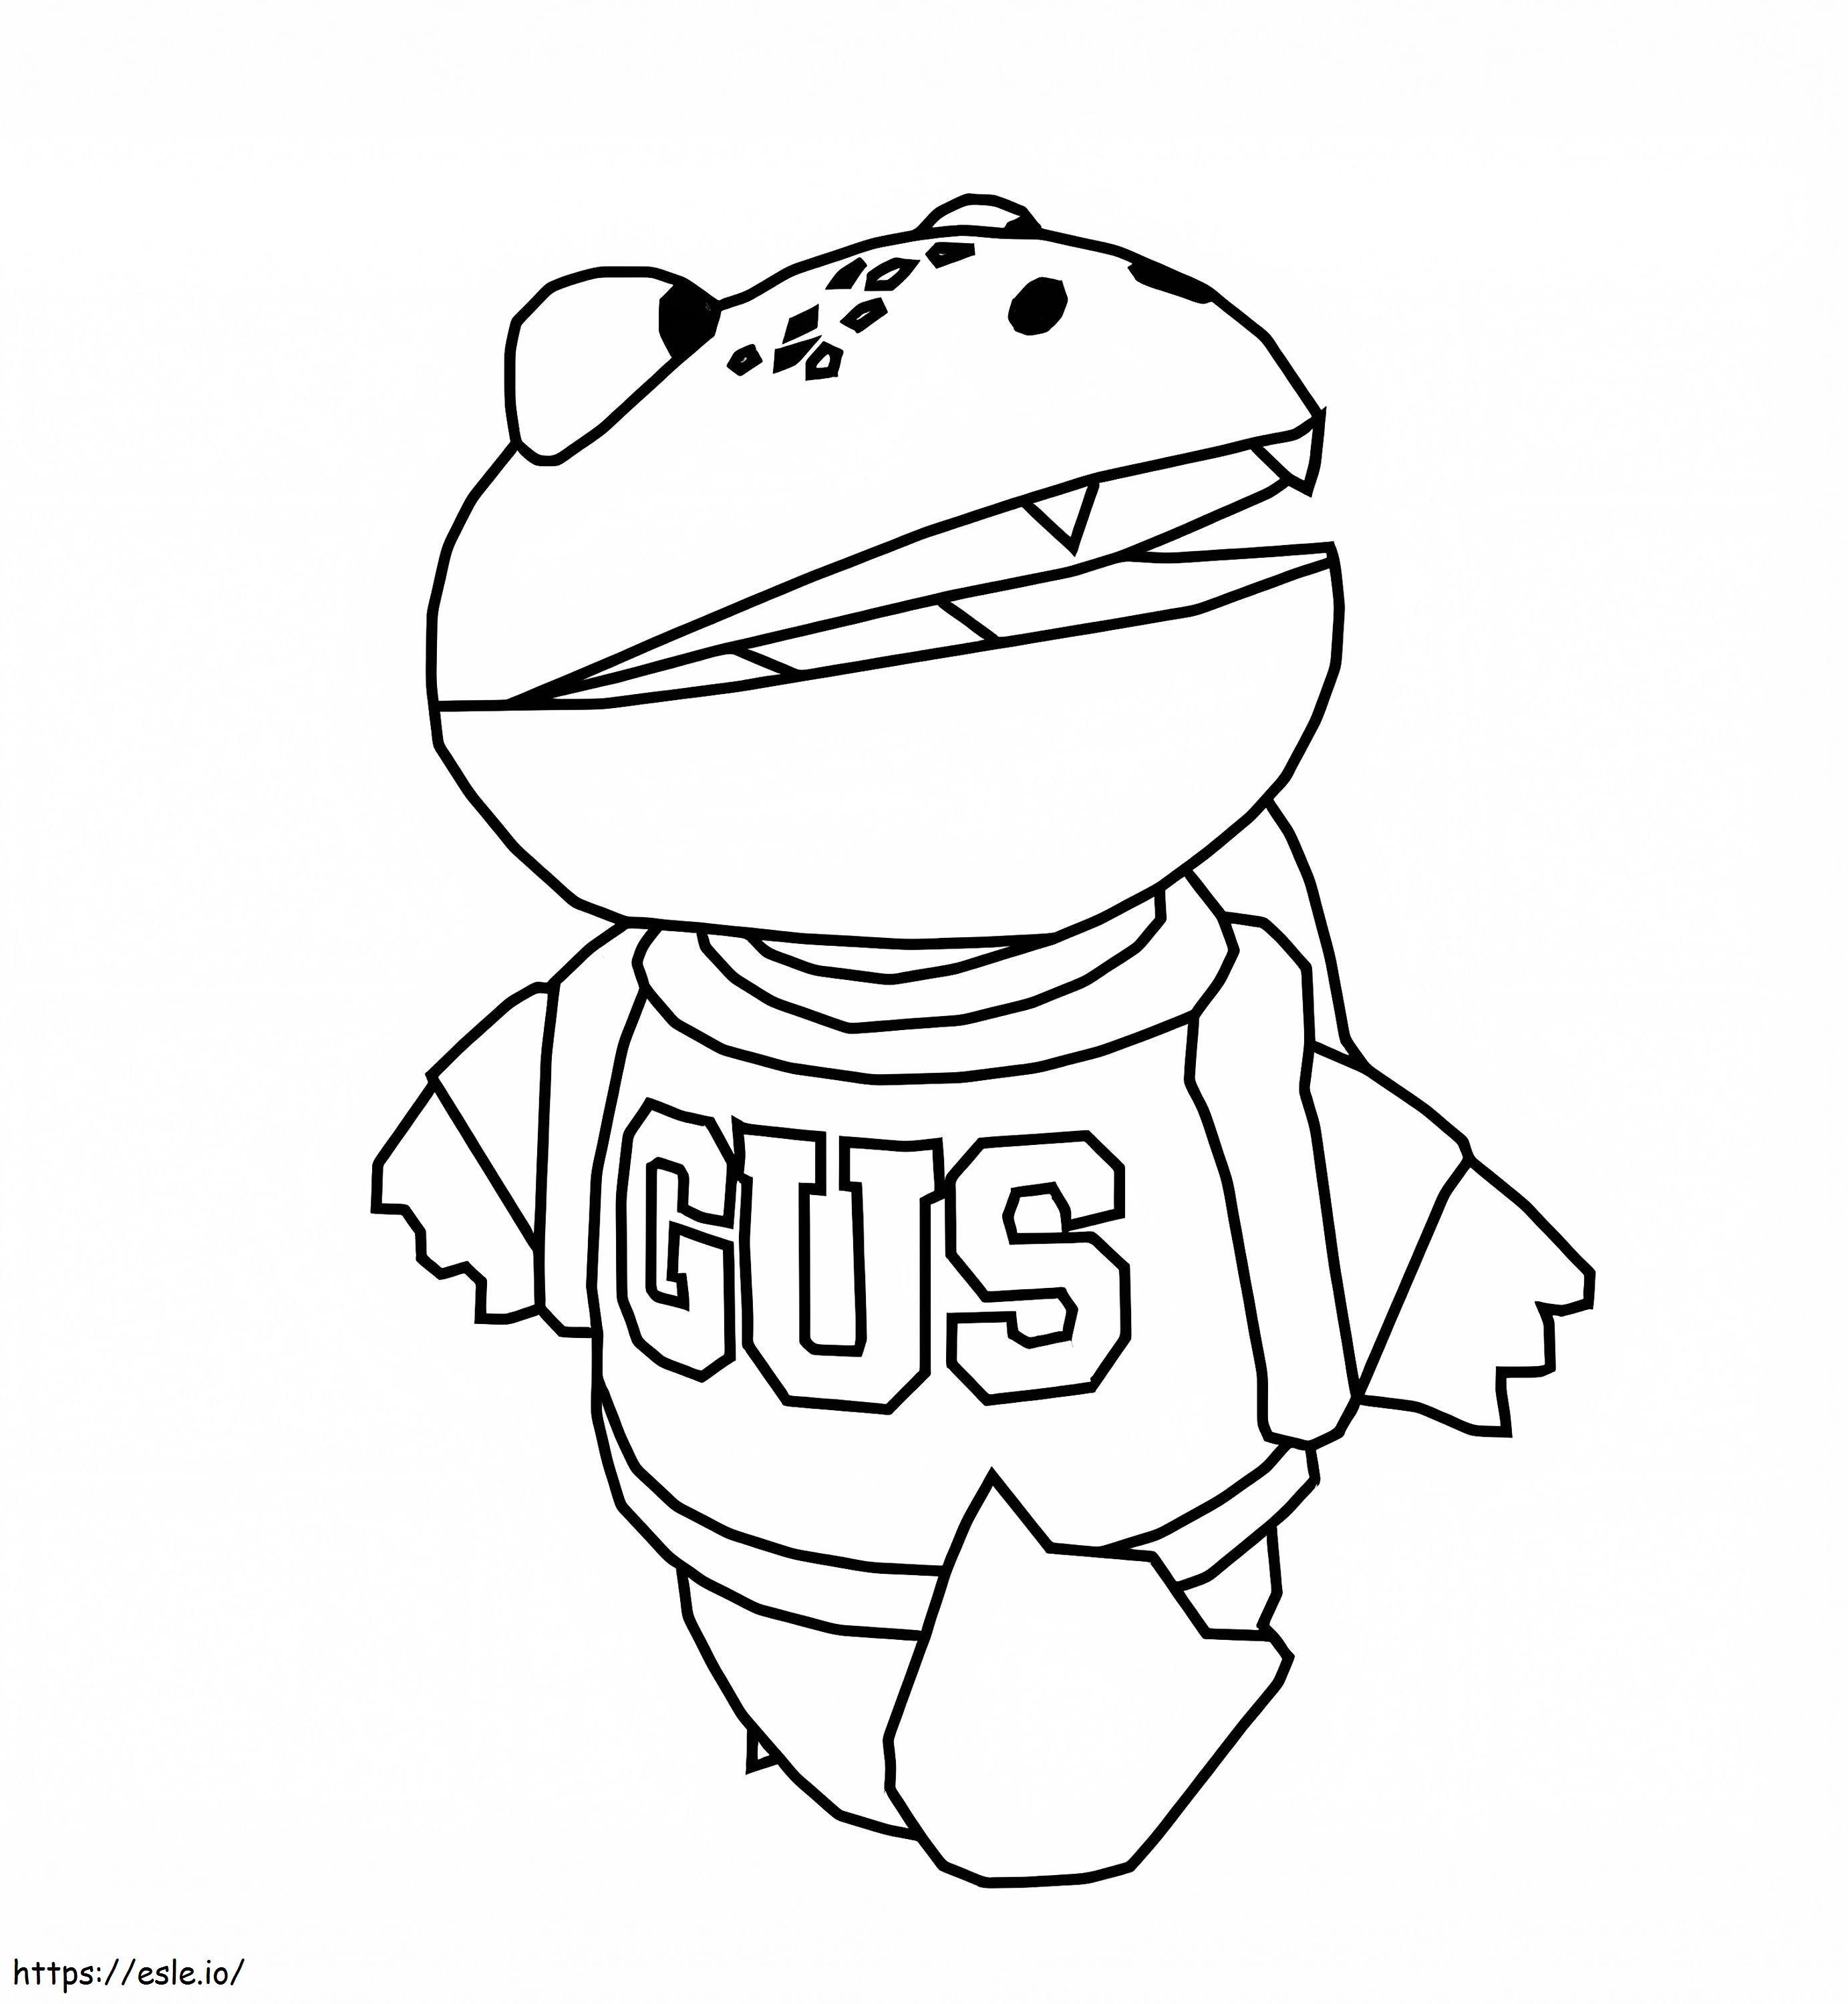 Coloriage Gus l'alligator gommeux à imprimer dessin